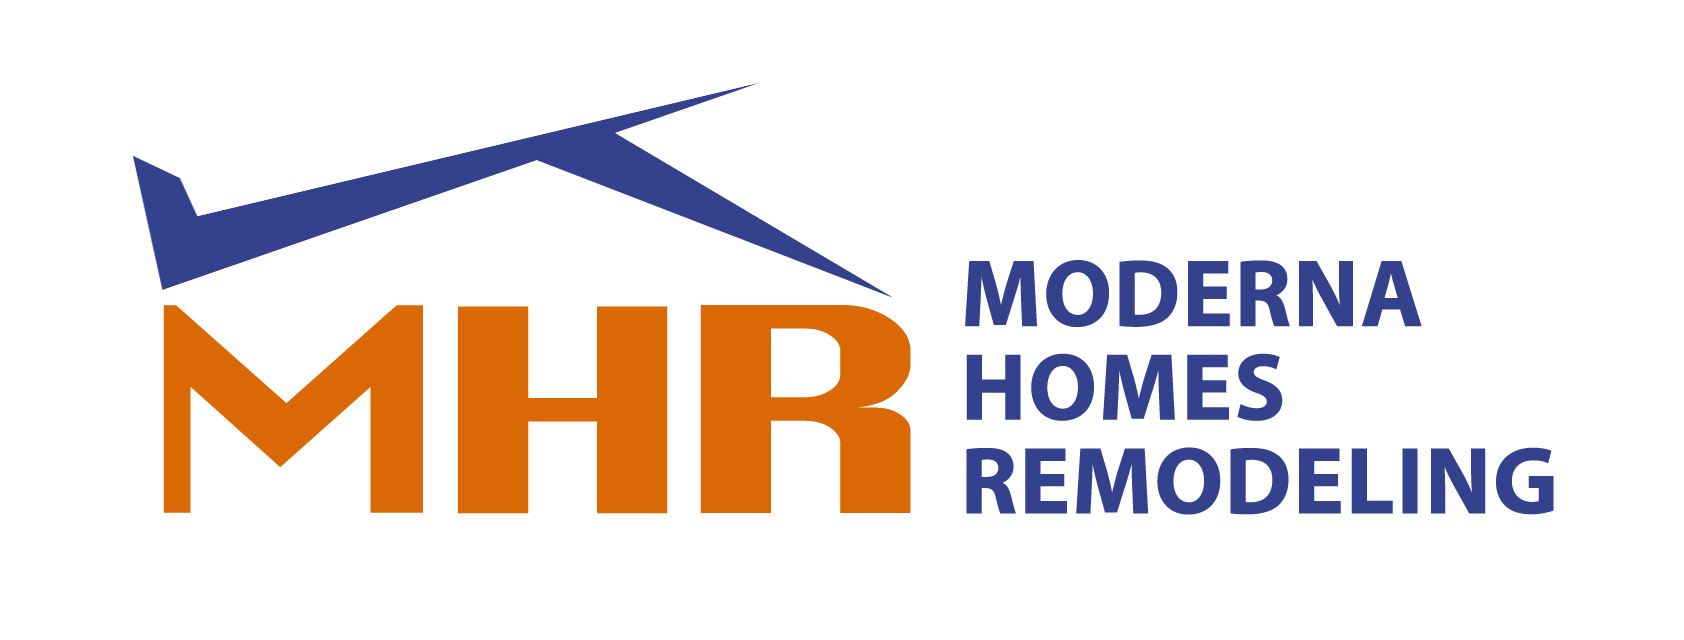 MHR - Moderna Homes Remodeling LLC Logo